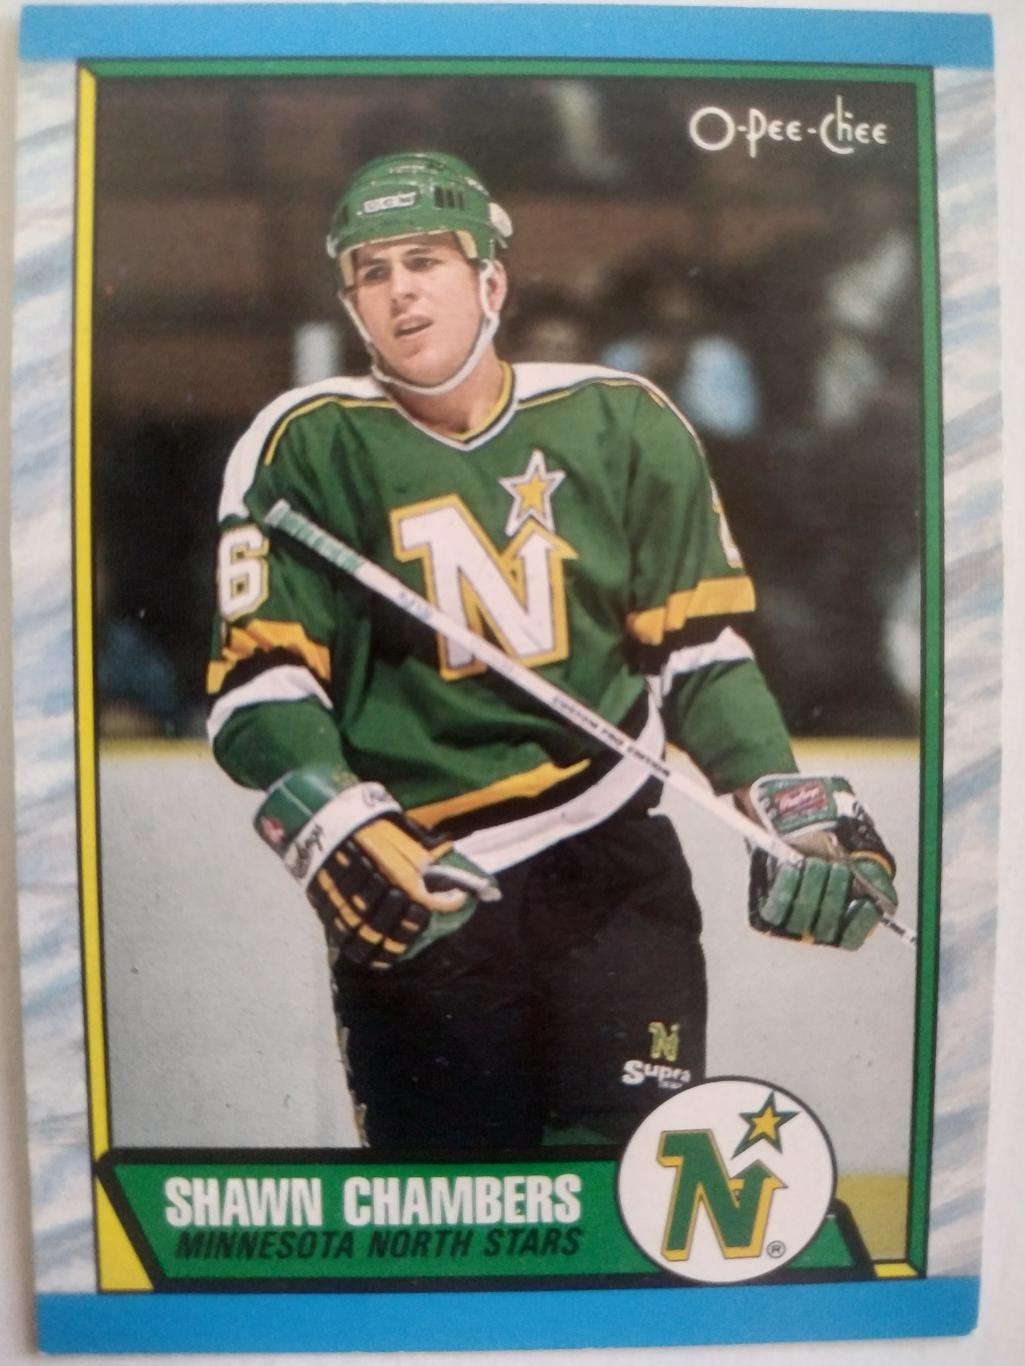 ХОККЕЙ КАРТОЧКА НХЛ O-PEE-CHEE 1989 NHL SHAWN CHAMBERS MINNESOTA NORTH STAR #142